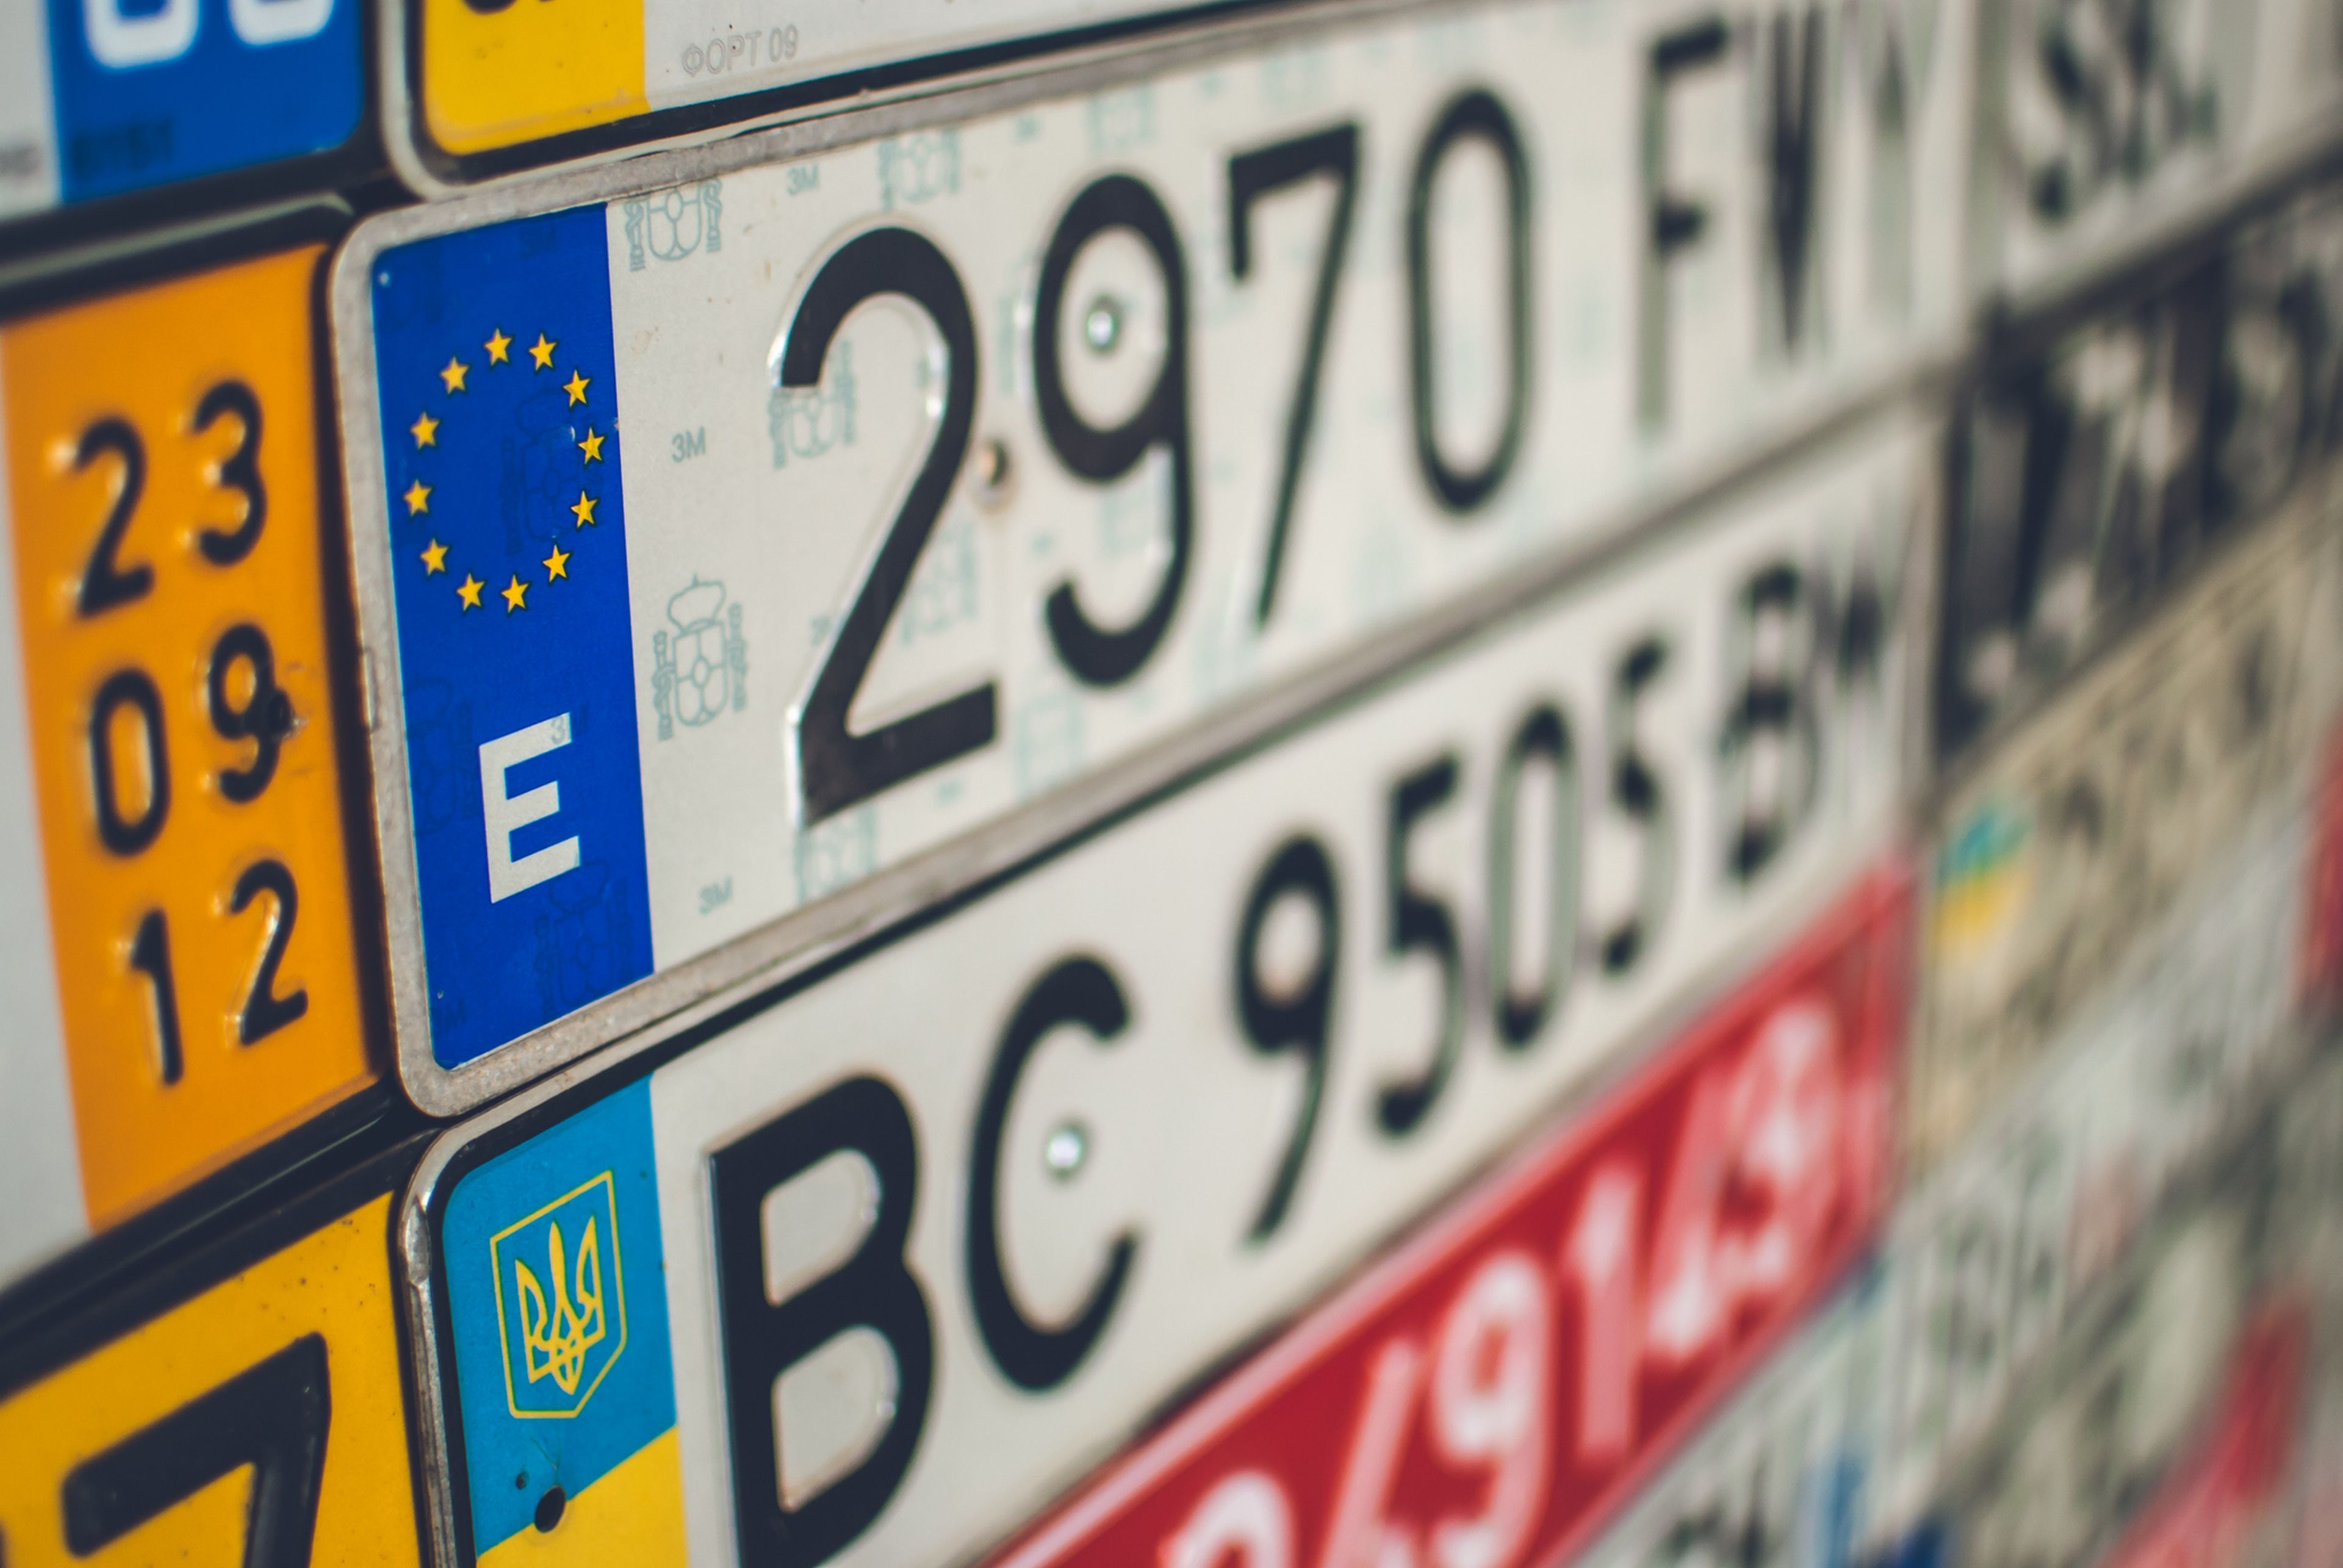 Colección de placas de varios países europeas